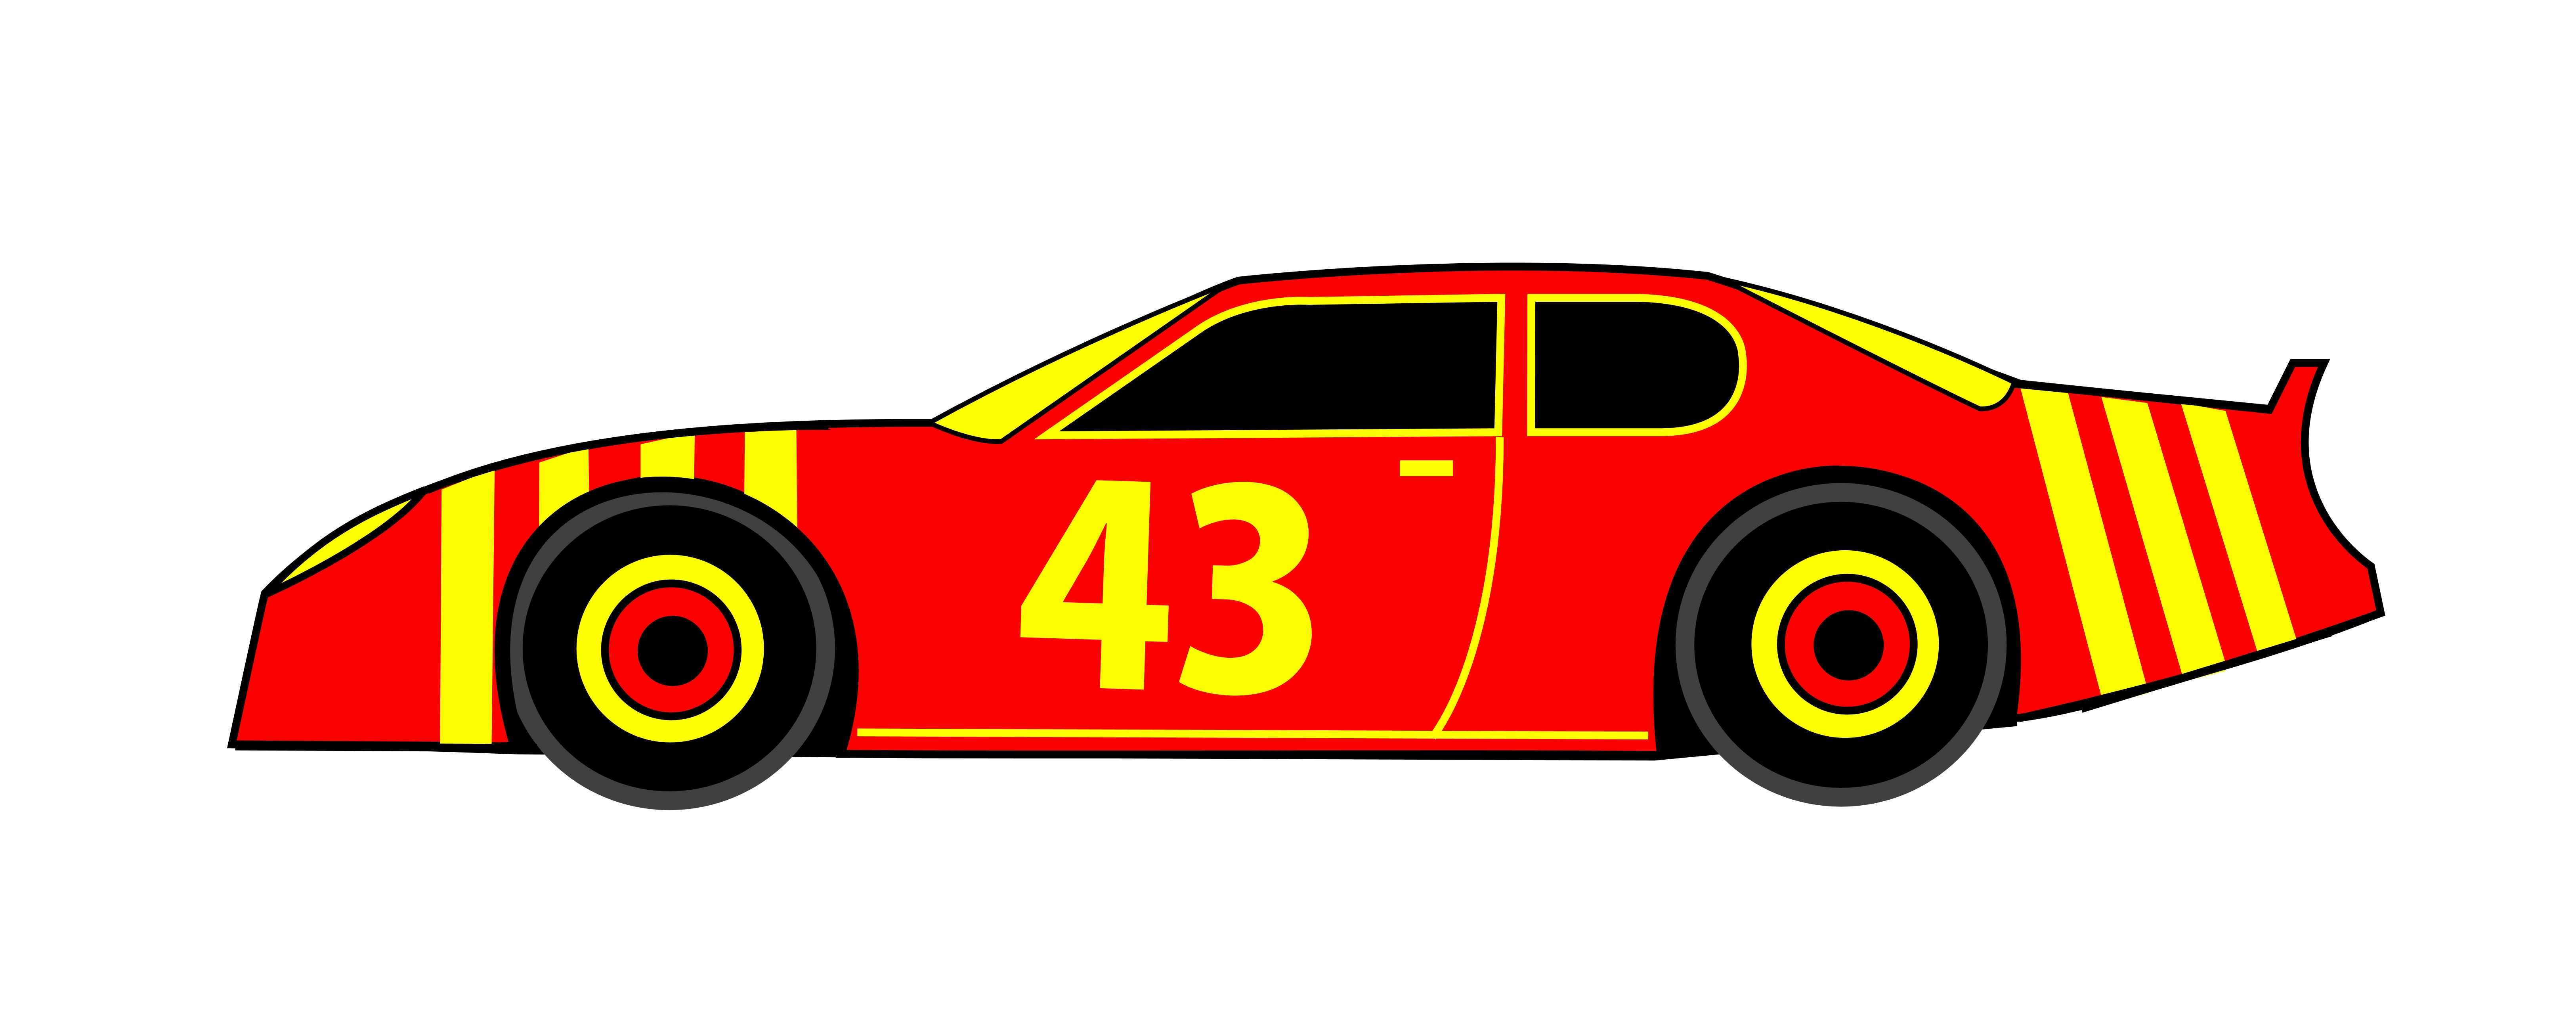 Nascar Race Car Clip Art .. - Race Car Clipart